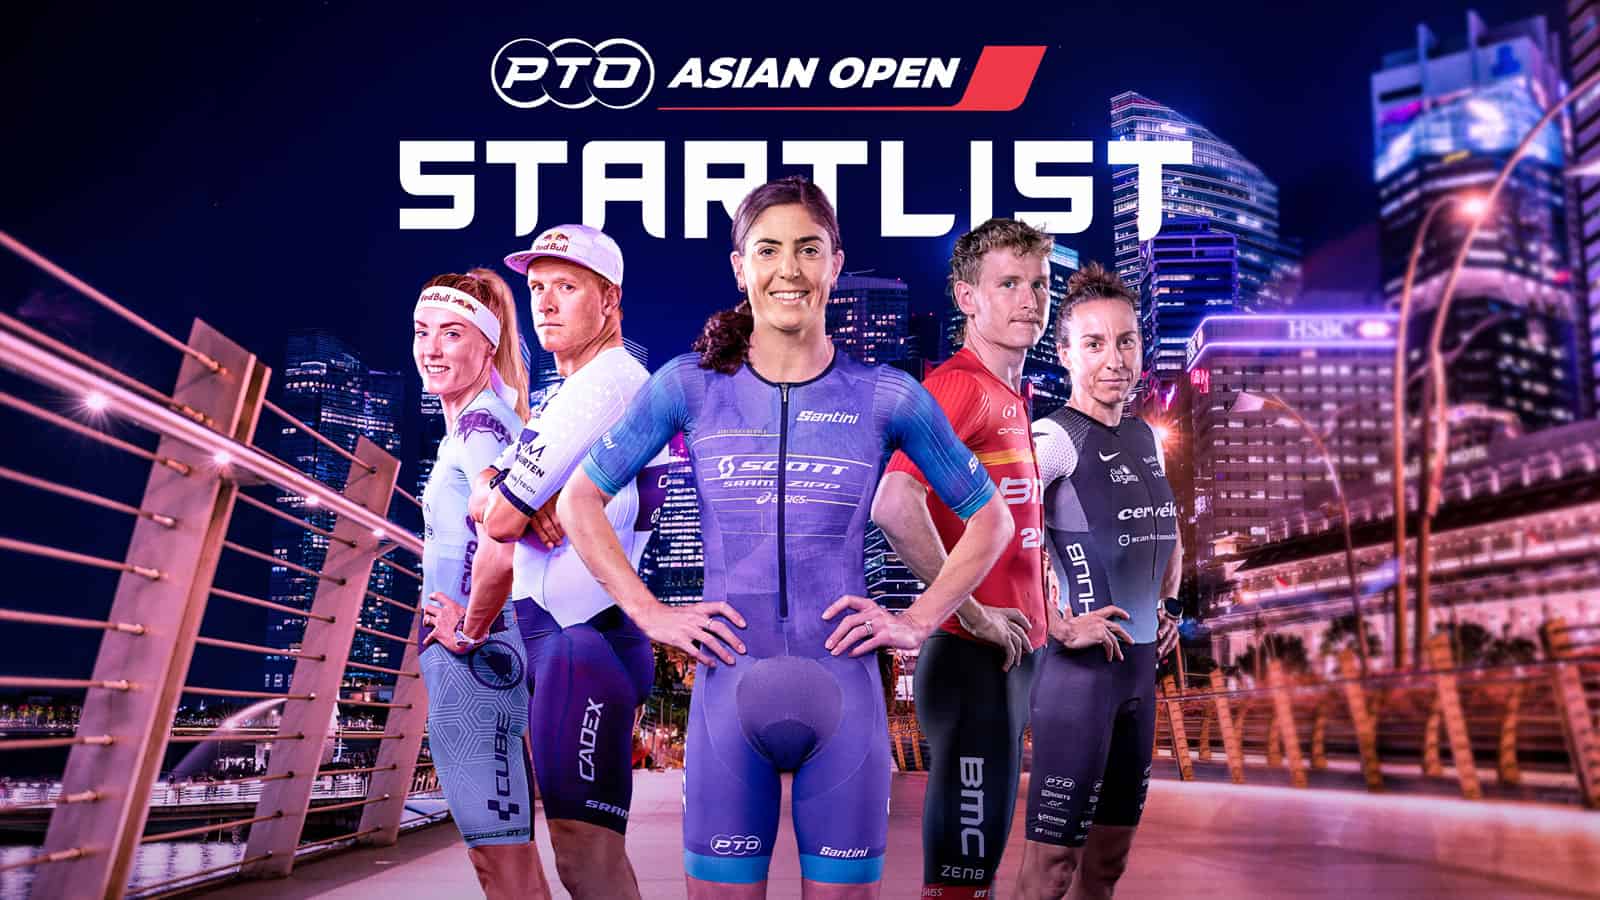 Asian Open Start List Banner